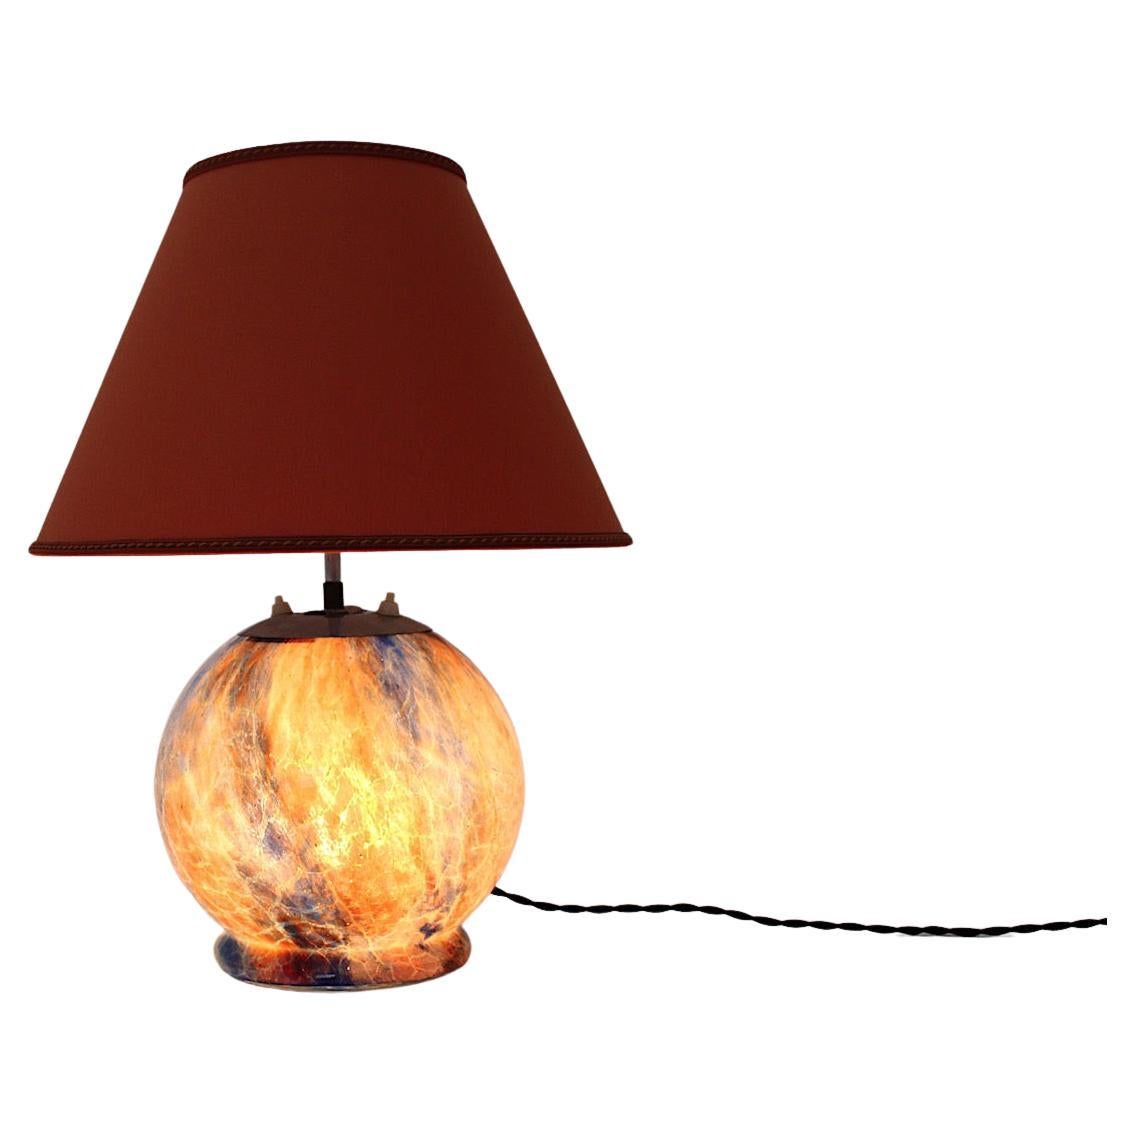 Mid-Century Modern Vintage Tischlampe mit Glassockel Kugel wie und ein Dreieck Form Lampenschirm in Textilgewebe 1940er Jahre Deutschland.
Die schöne Glaskugel mit vielen Farben wie gebranntes Orange, Rot, Braun und Blau ist den Glasmurmeln aus